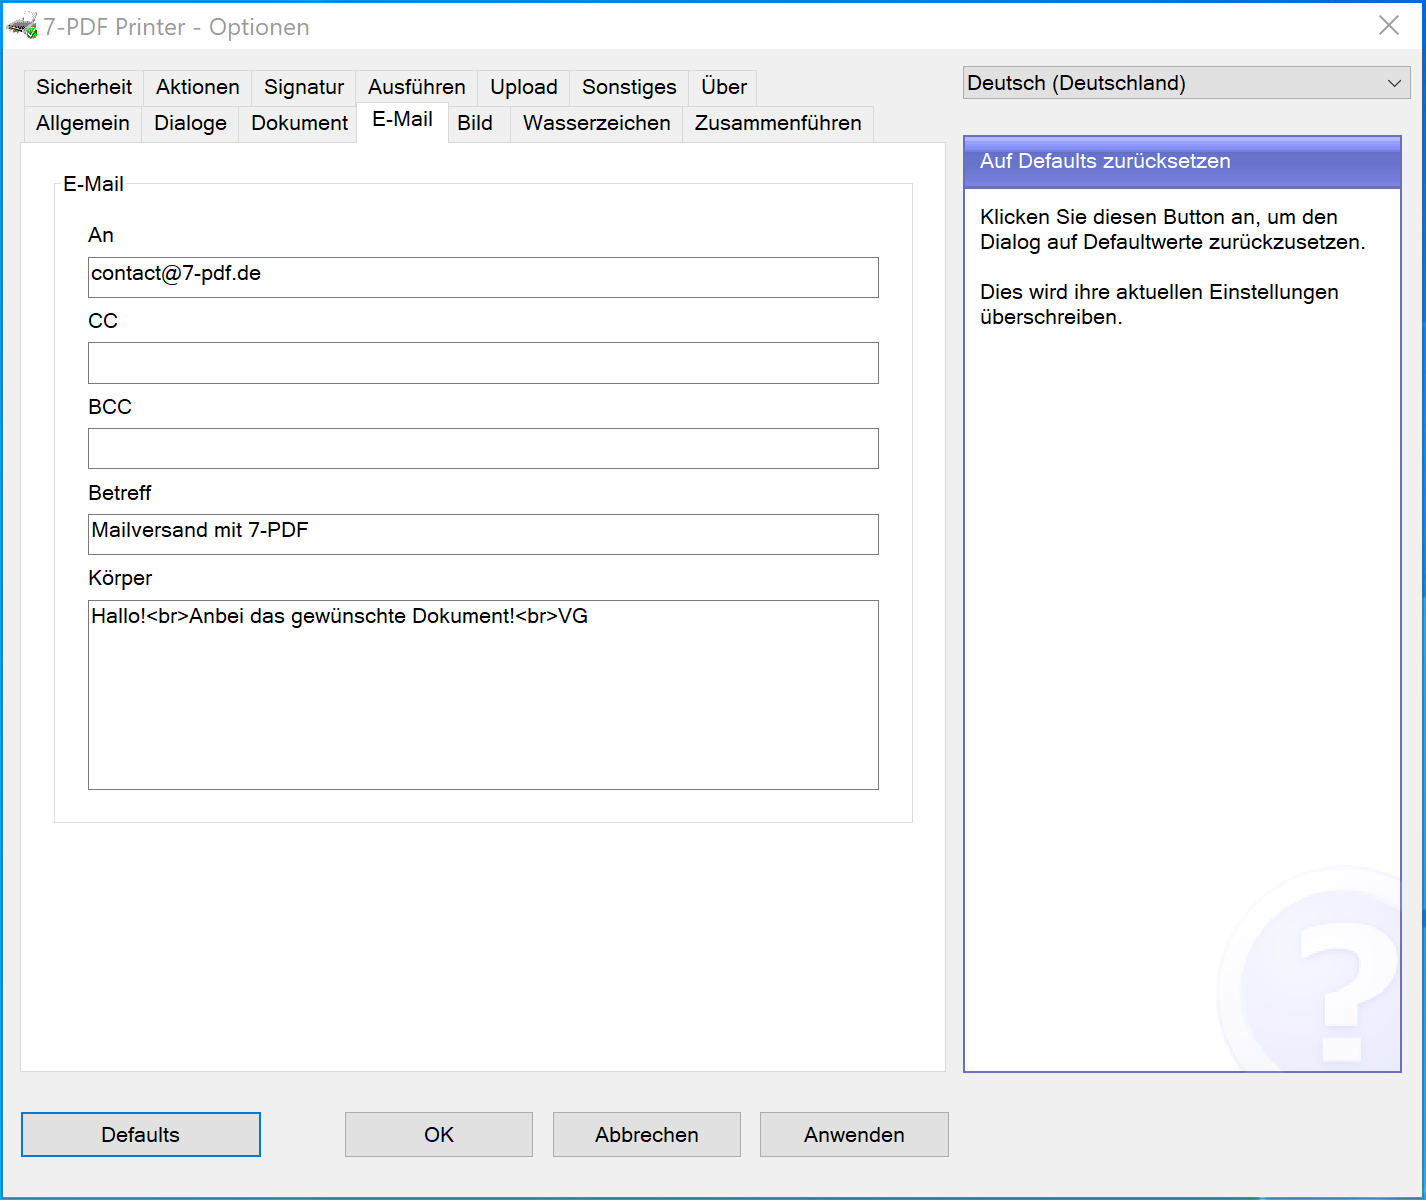 Fixe Konfiguration Mailversand im Optionen Dialog des PDF Druckers